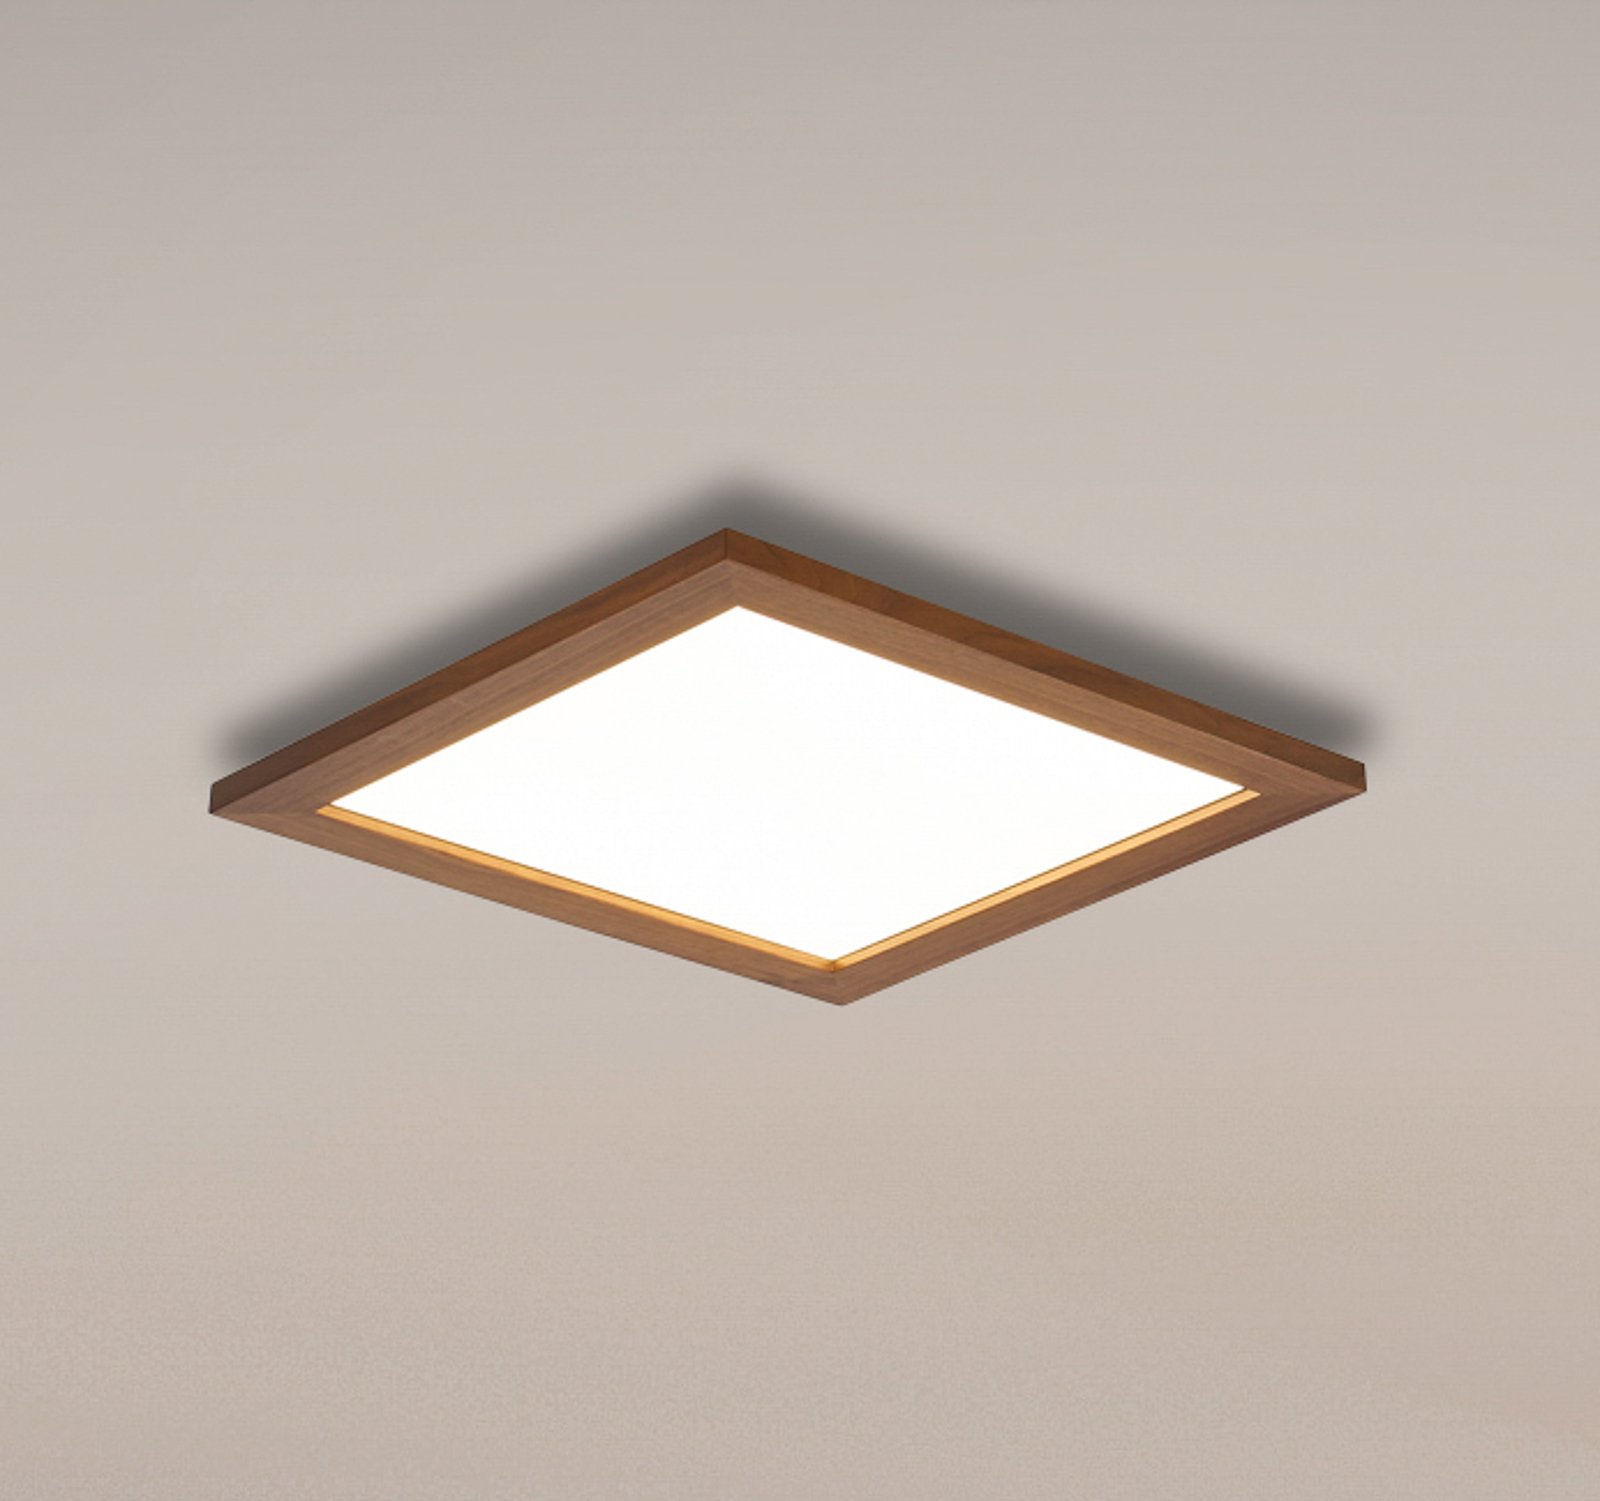 Quitani Aurinor LED paneel, walnoot, 45 cm